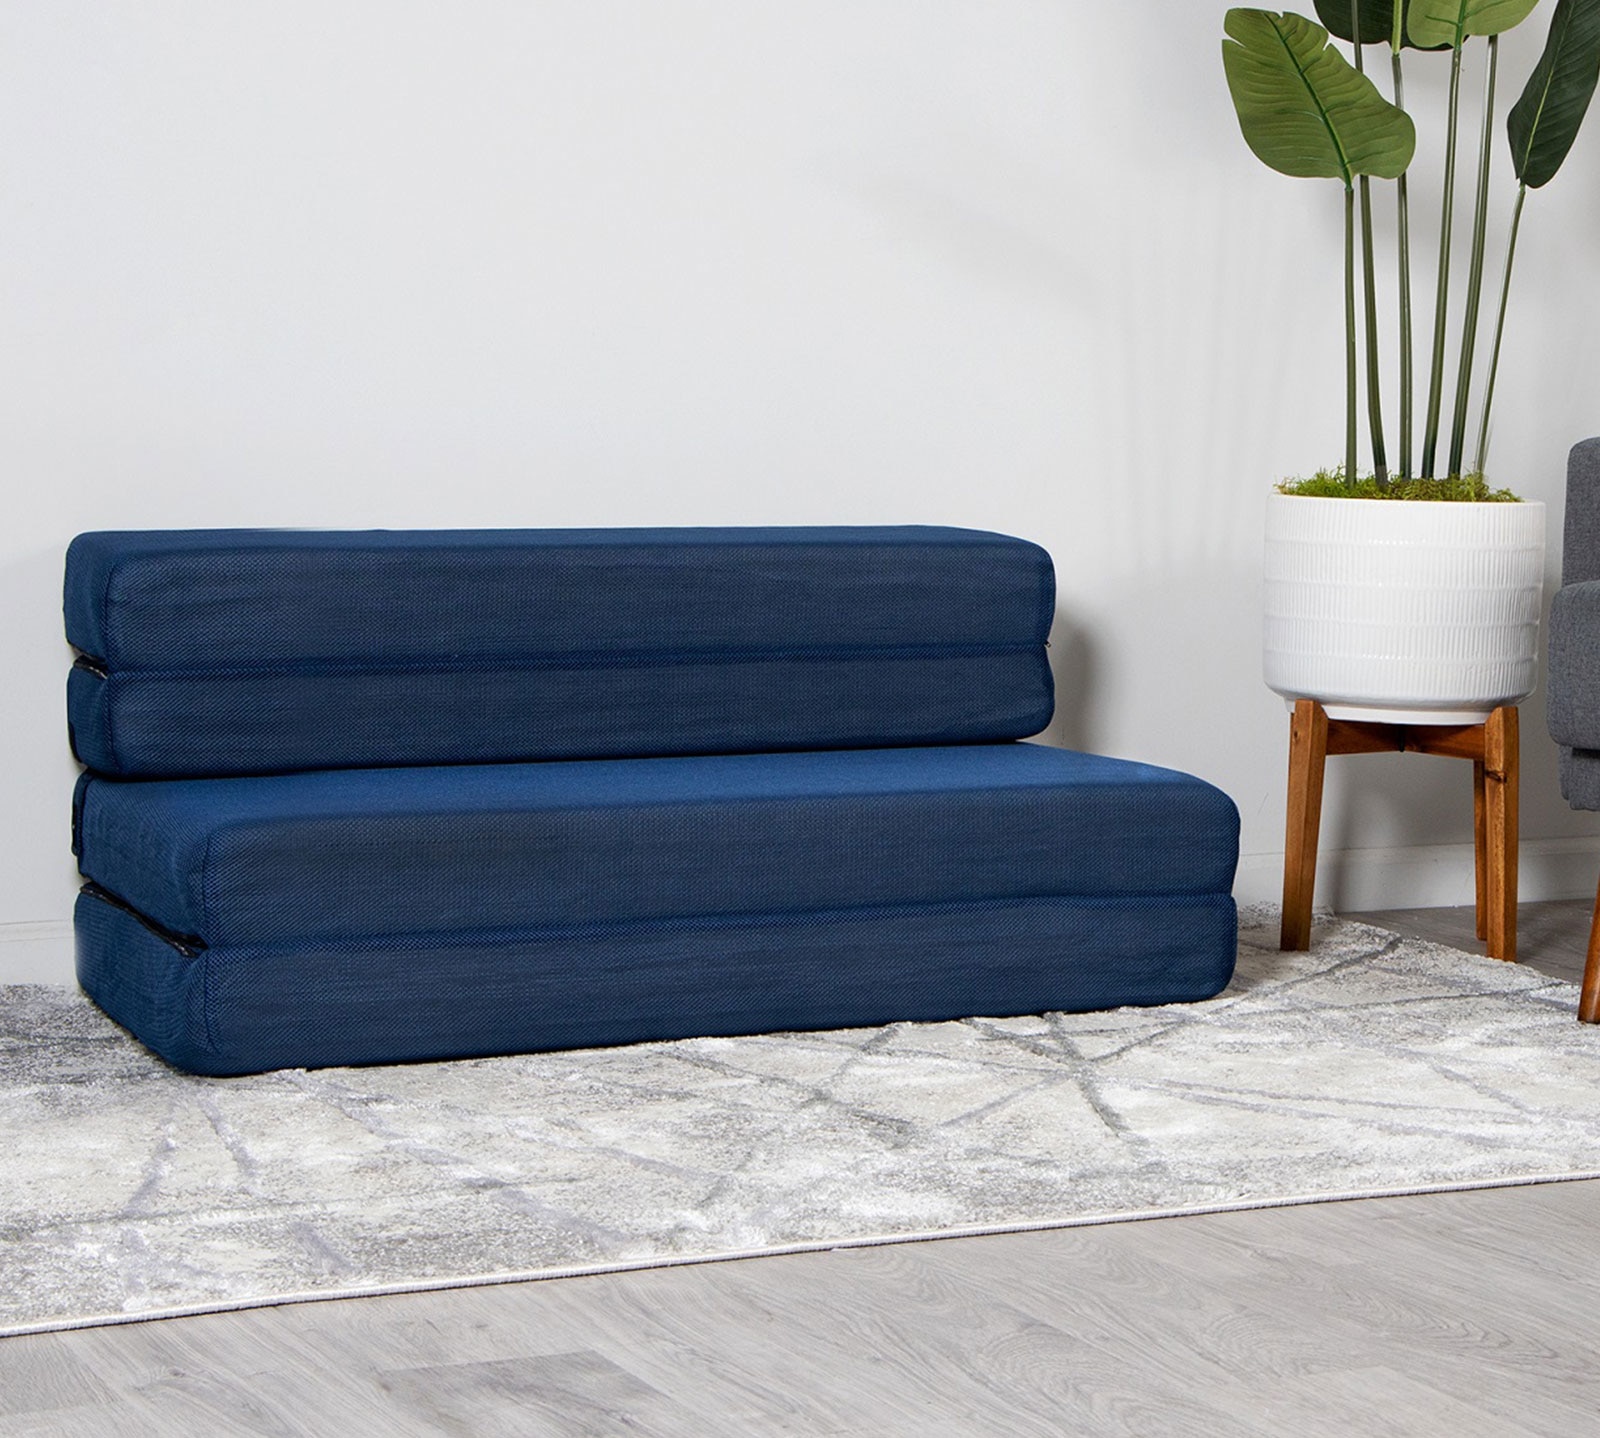 Milliard Tri Fold Sofa Bed Mattress